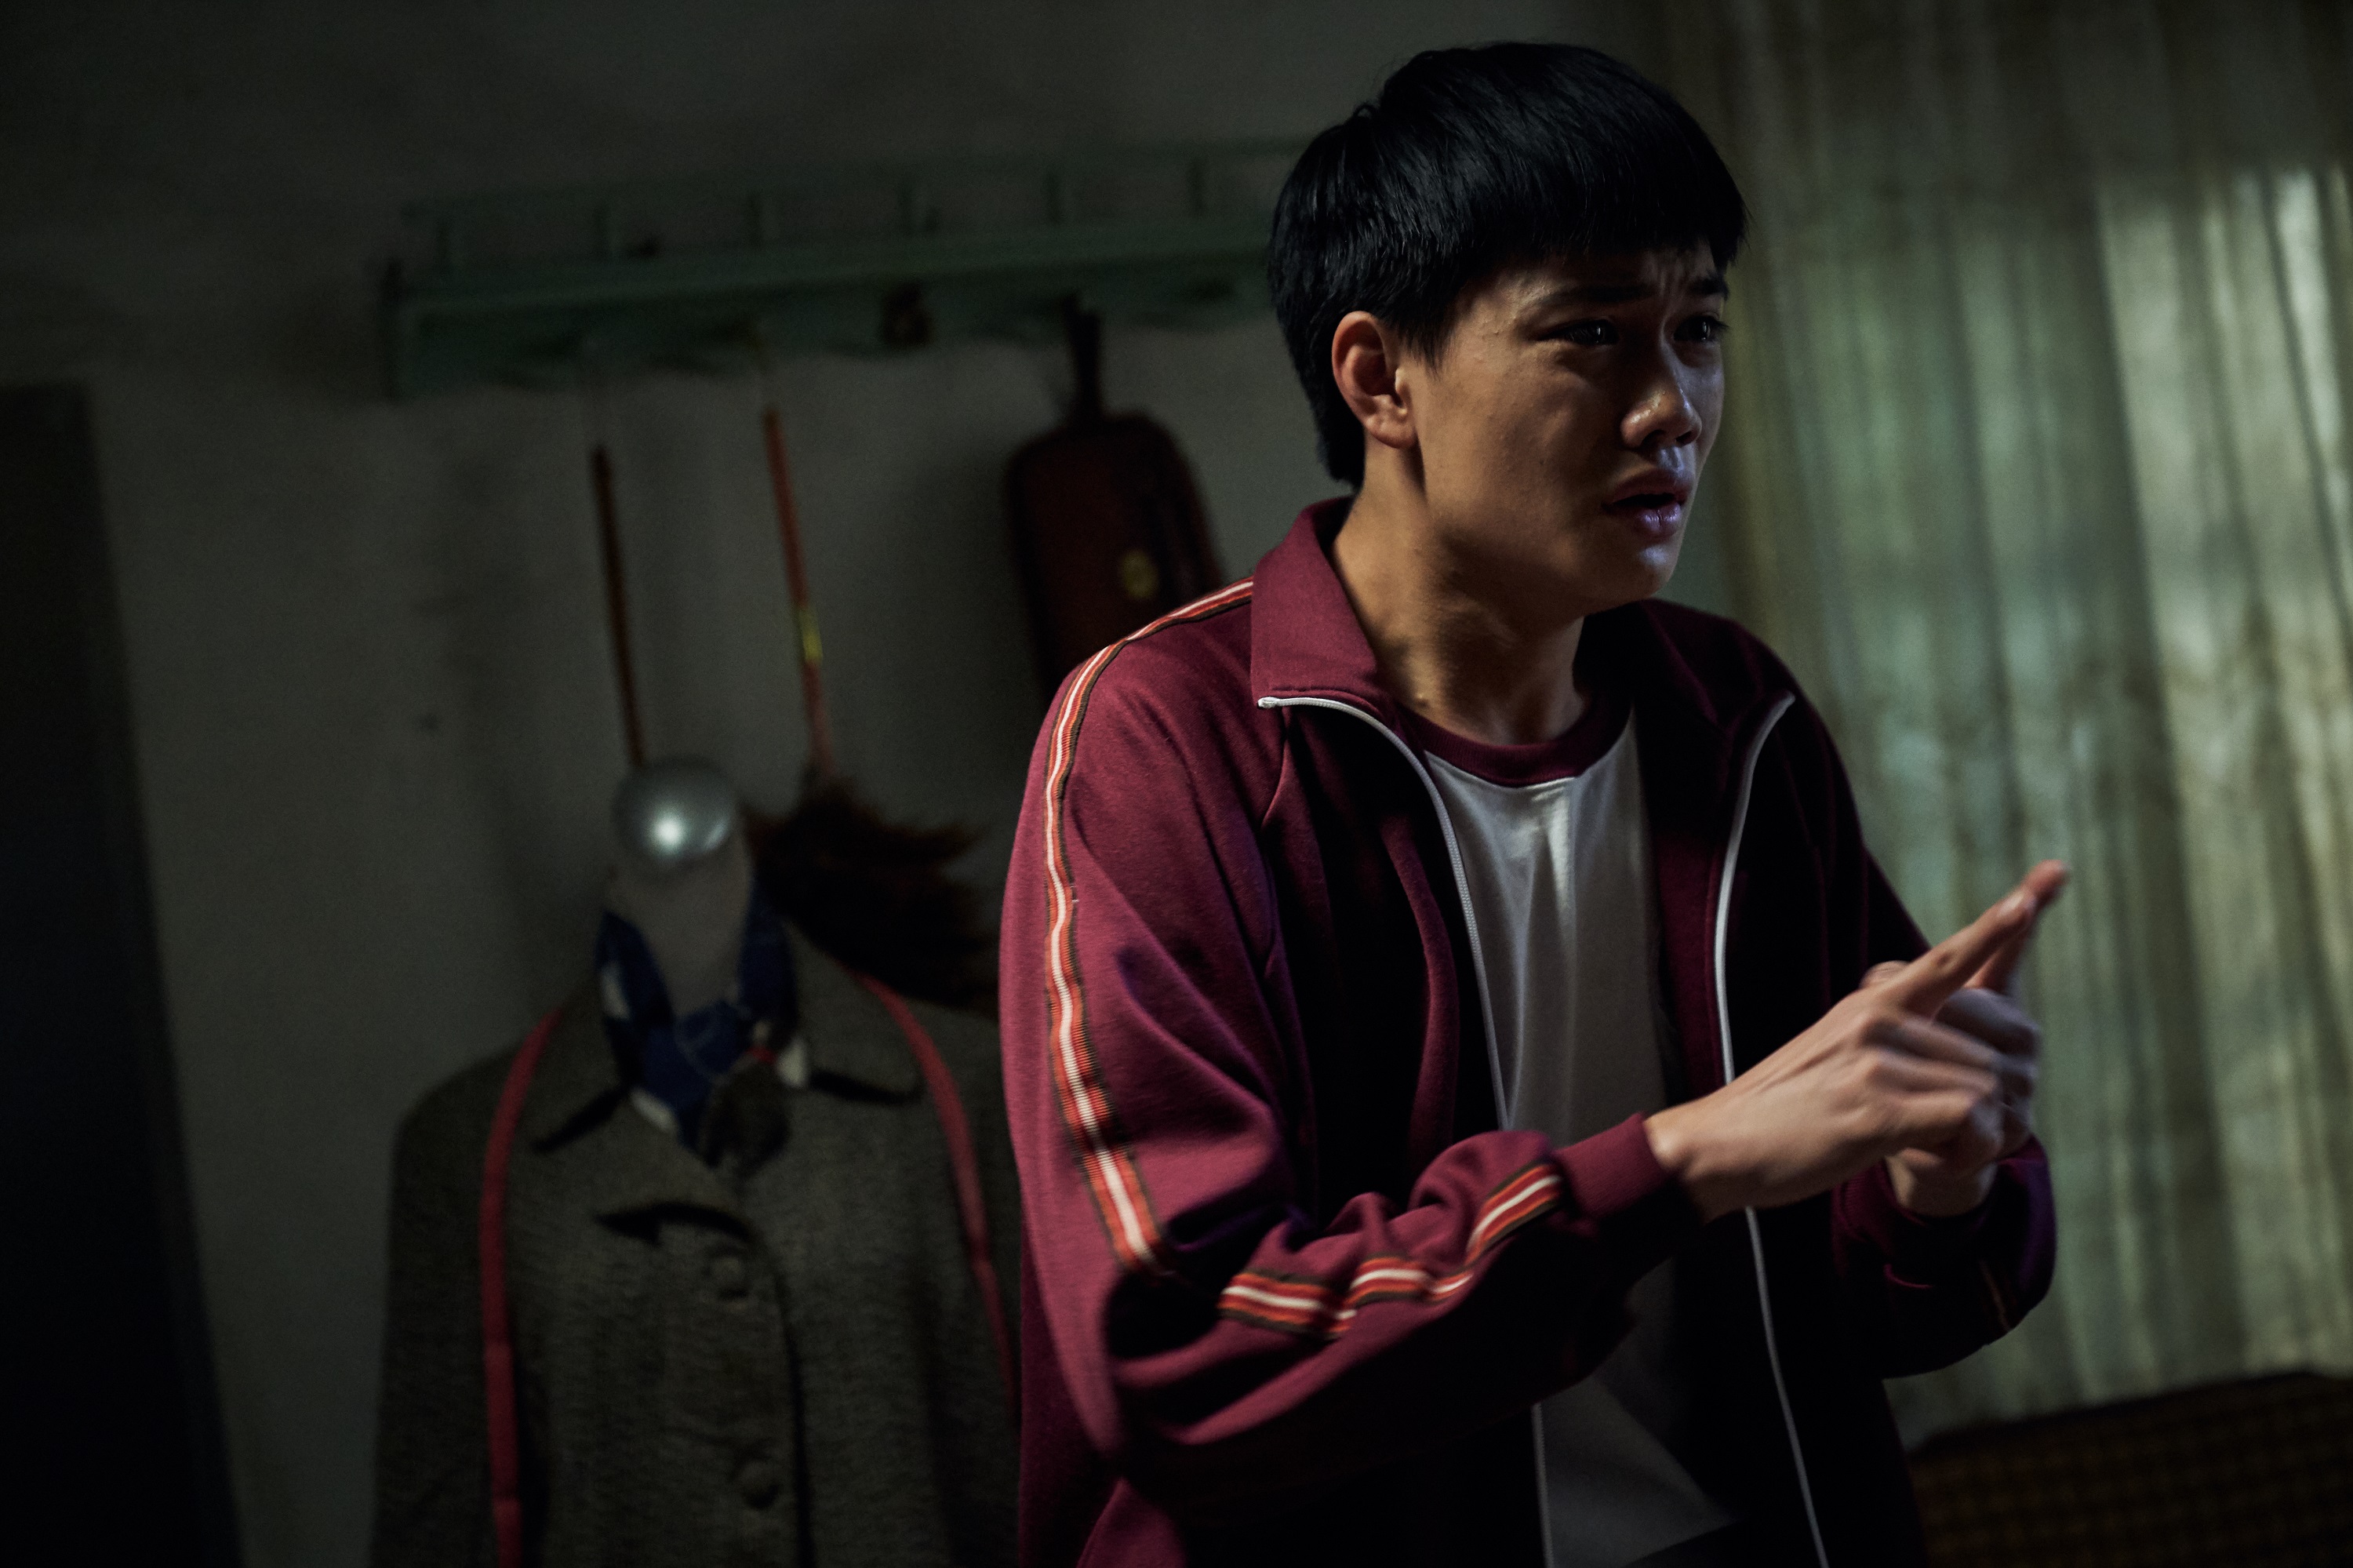 《無聲》國際傳捷報  導演爆上映版本與台北電影節不同  劉子銓15歲挑戰手語戲 期待展現電影核心價值